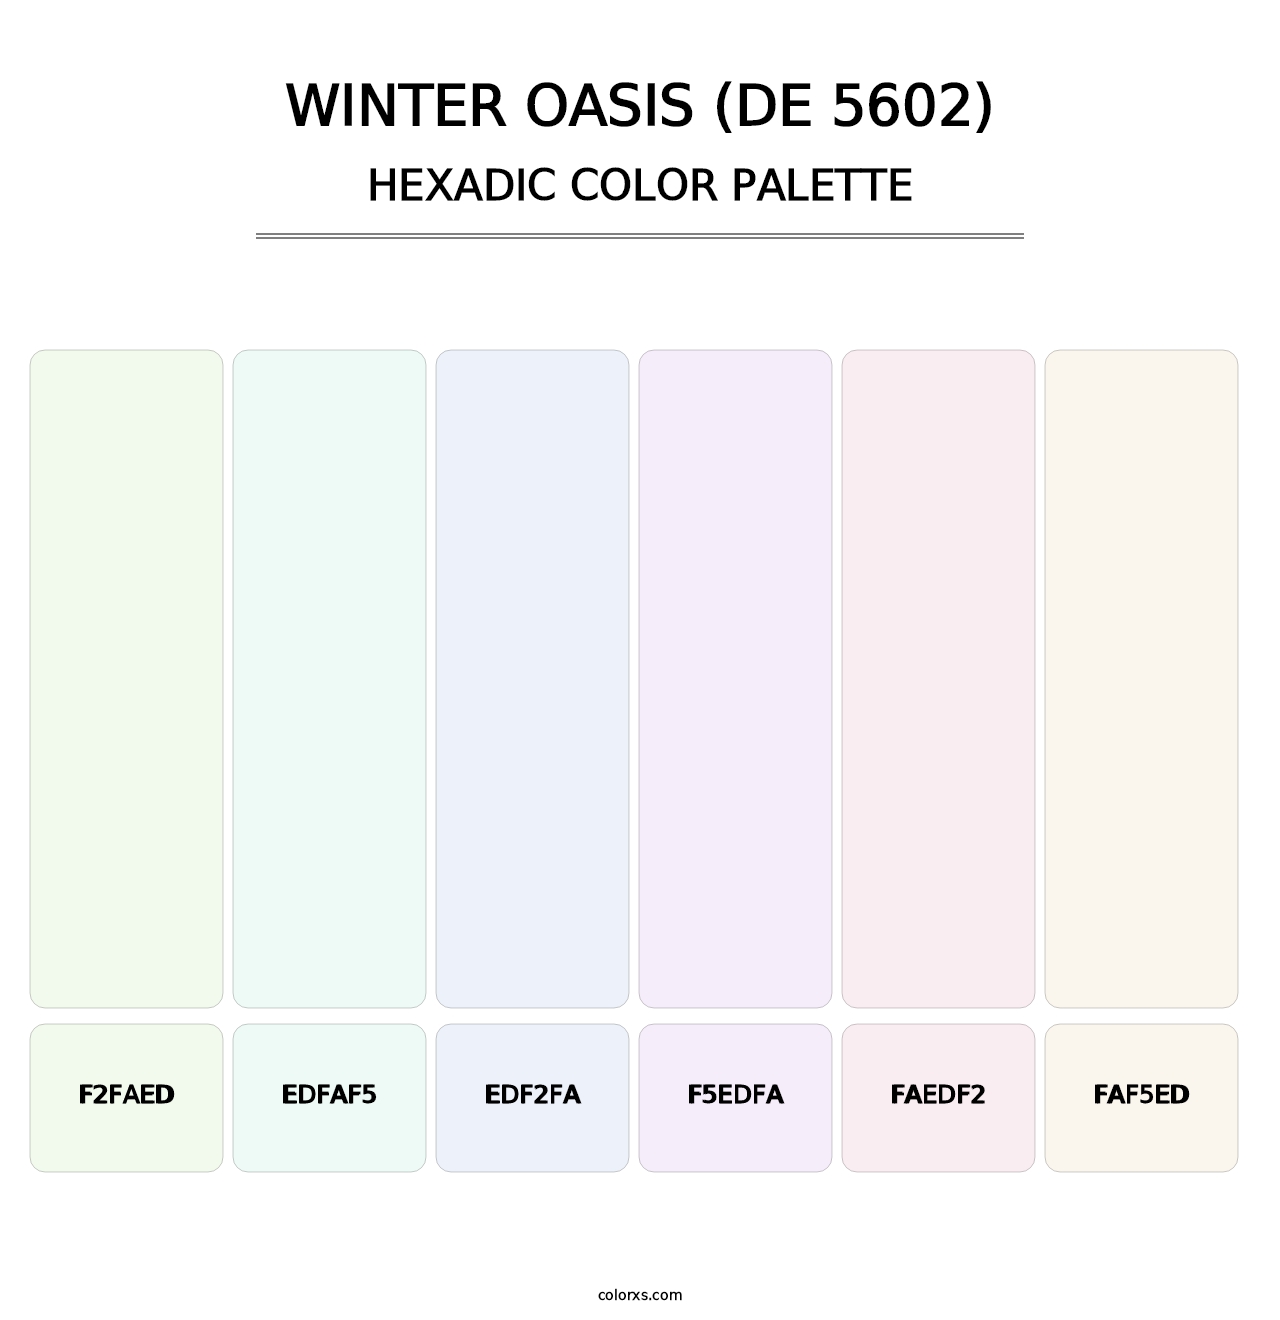 Winter Oasis (DE 5602) - Hexadic Color Palette